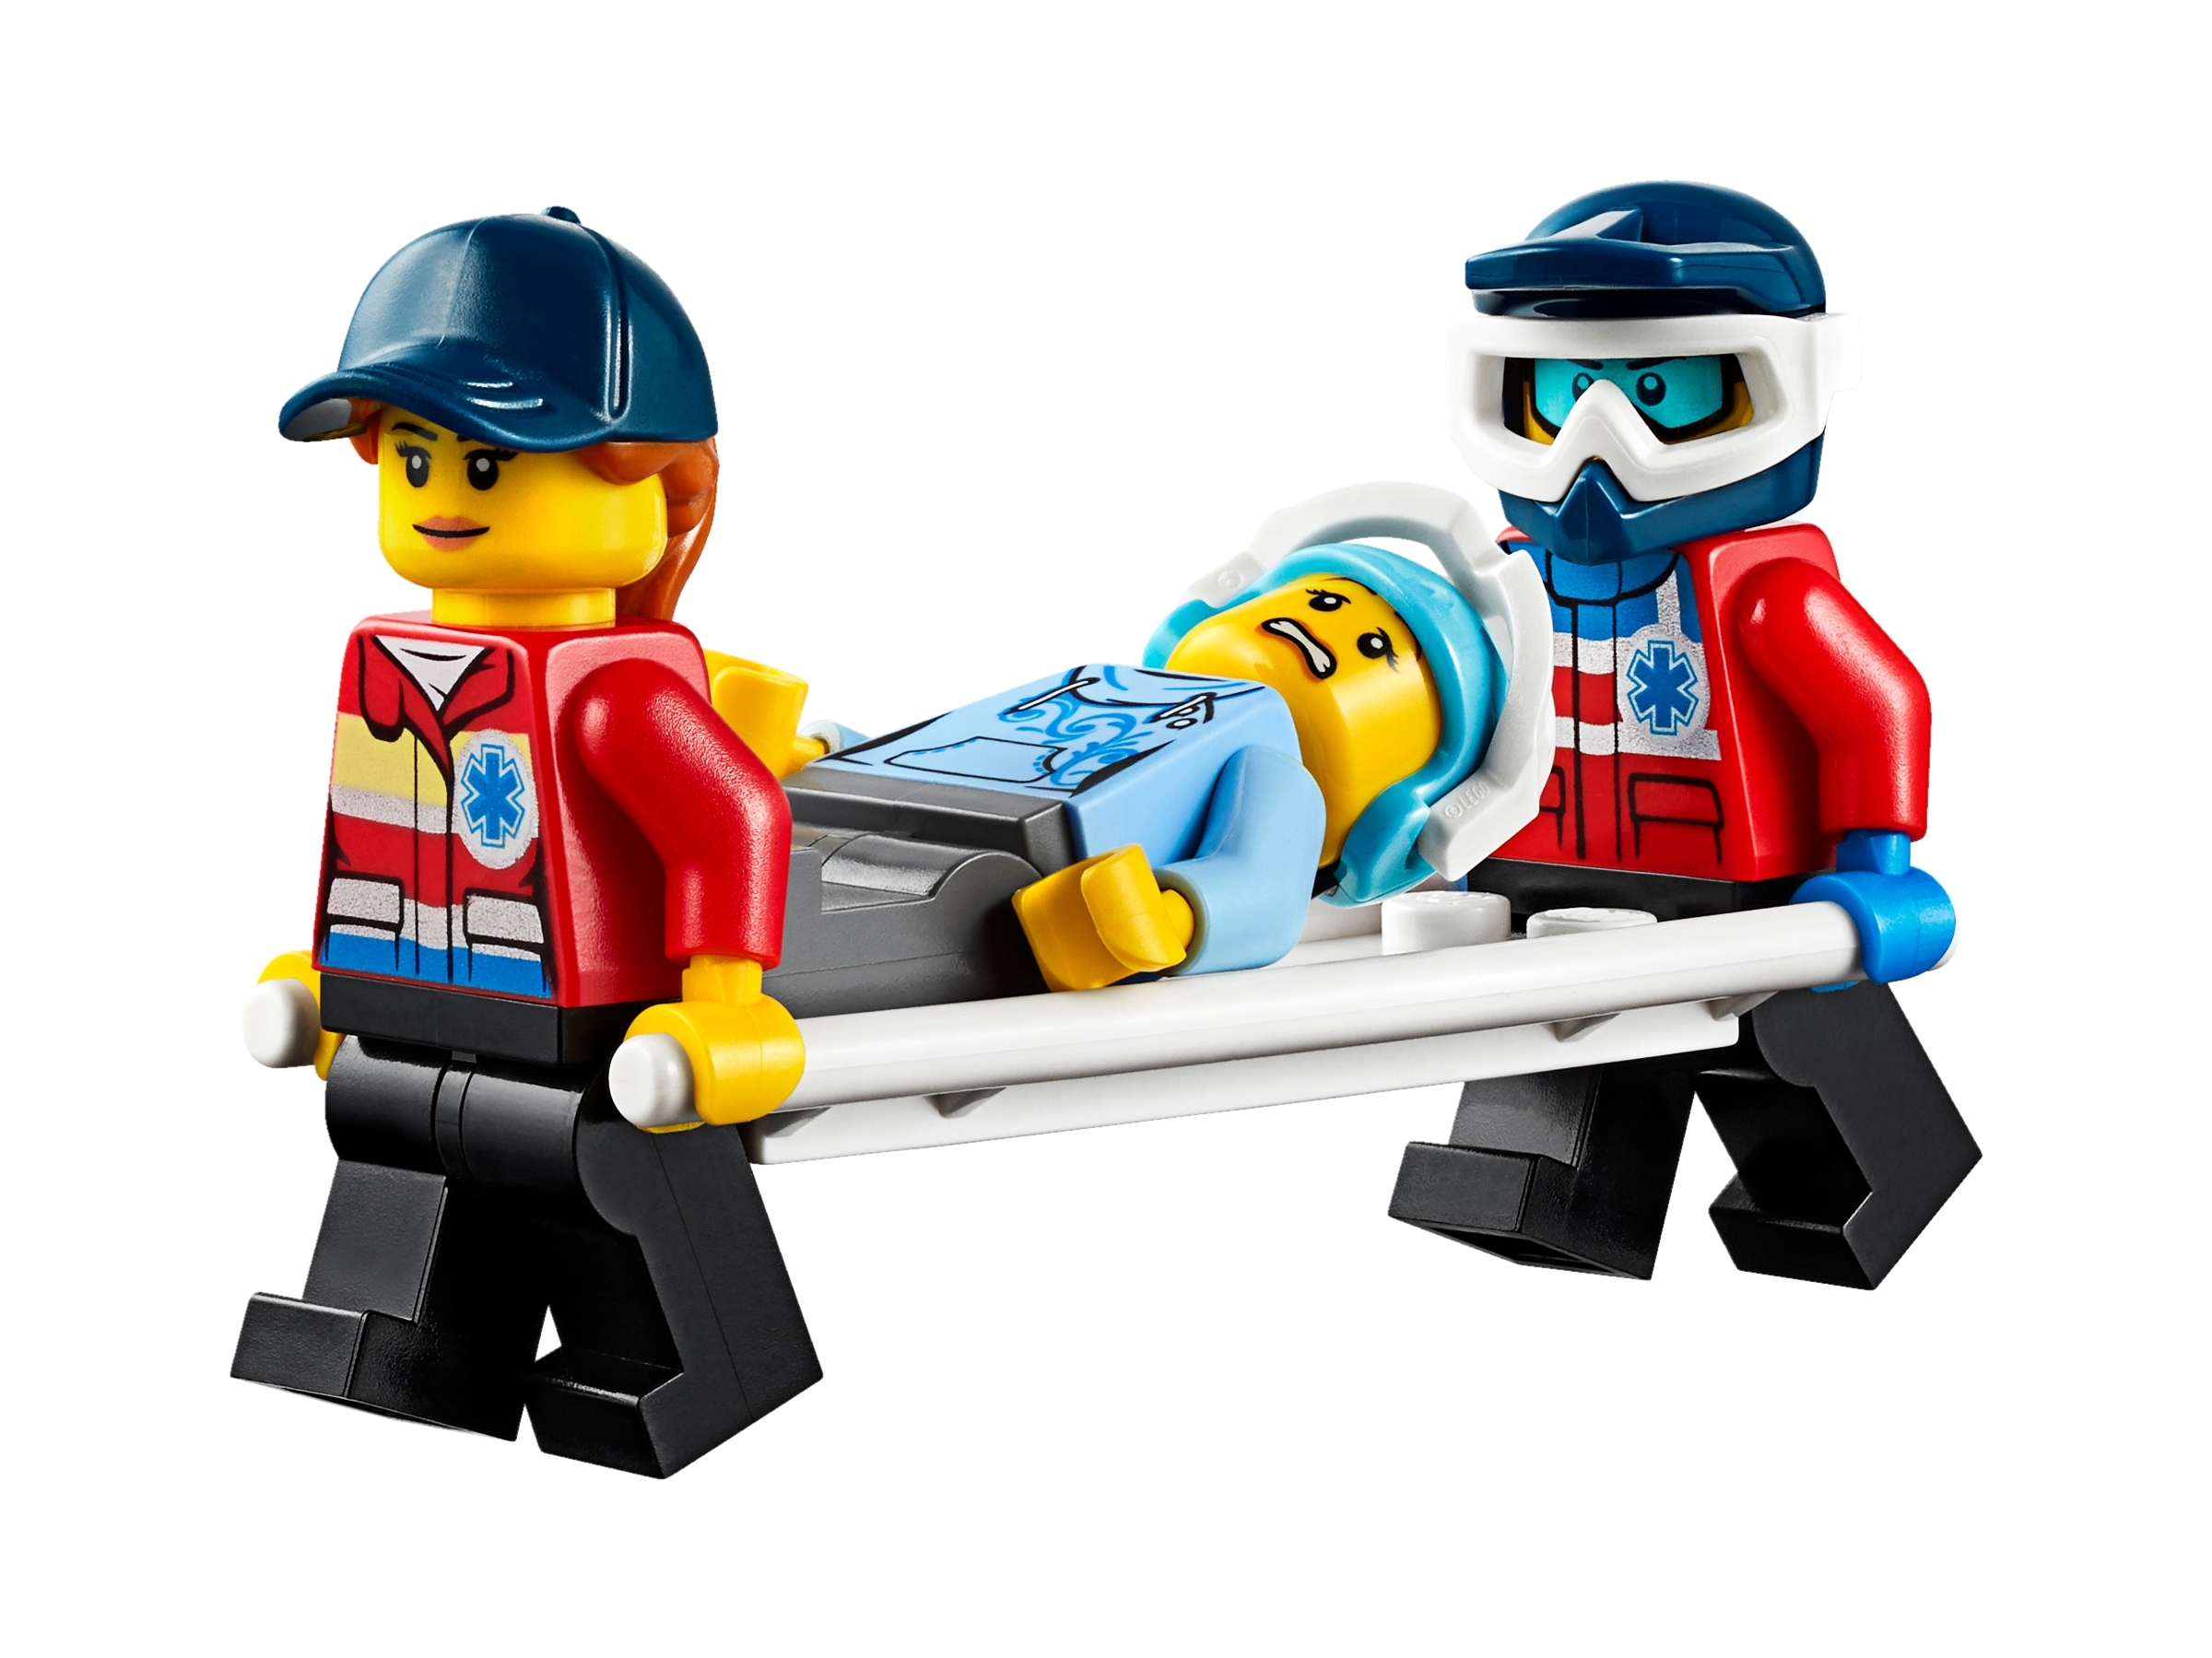 Lego City Ski Resort Construction Kit (60203) Building Kit 806 Pcs